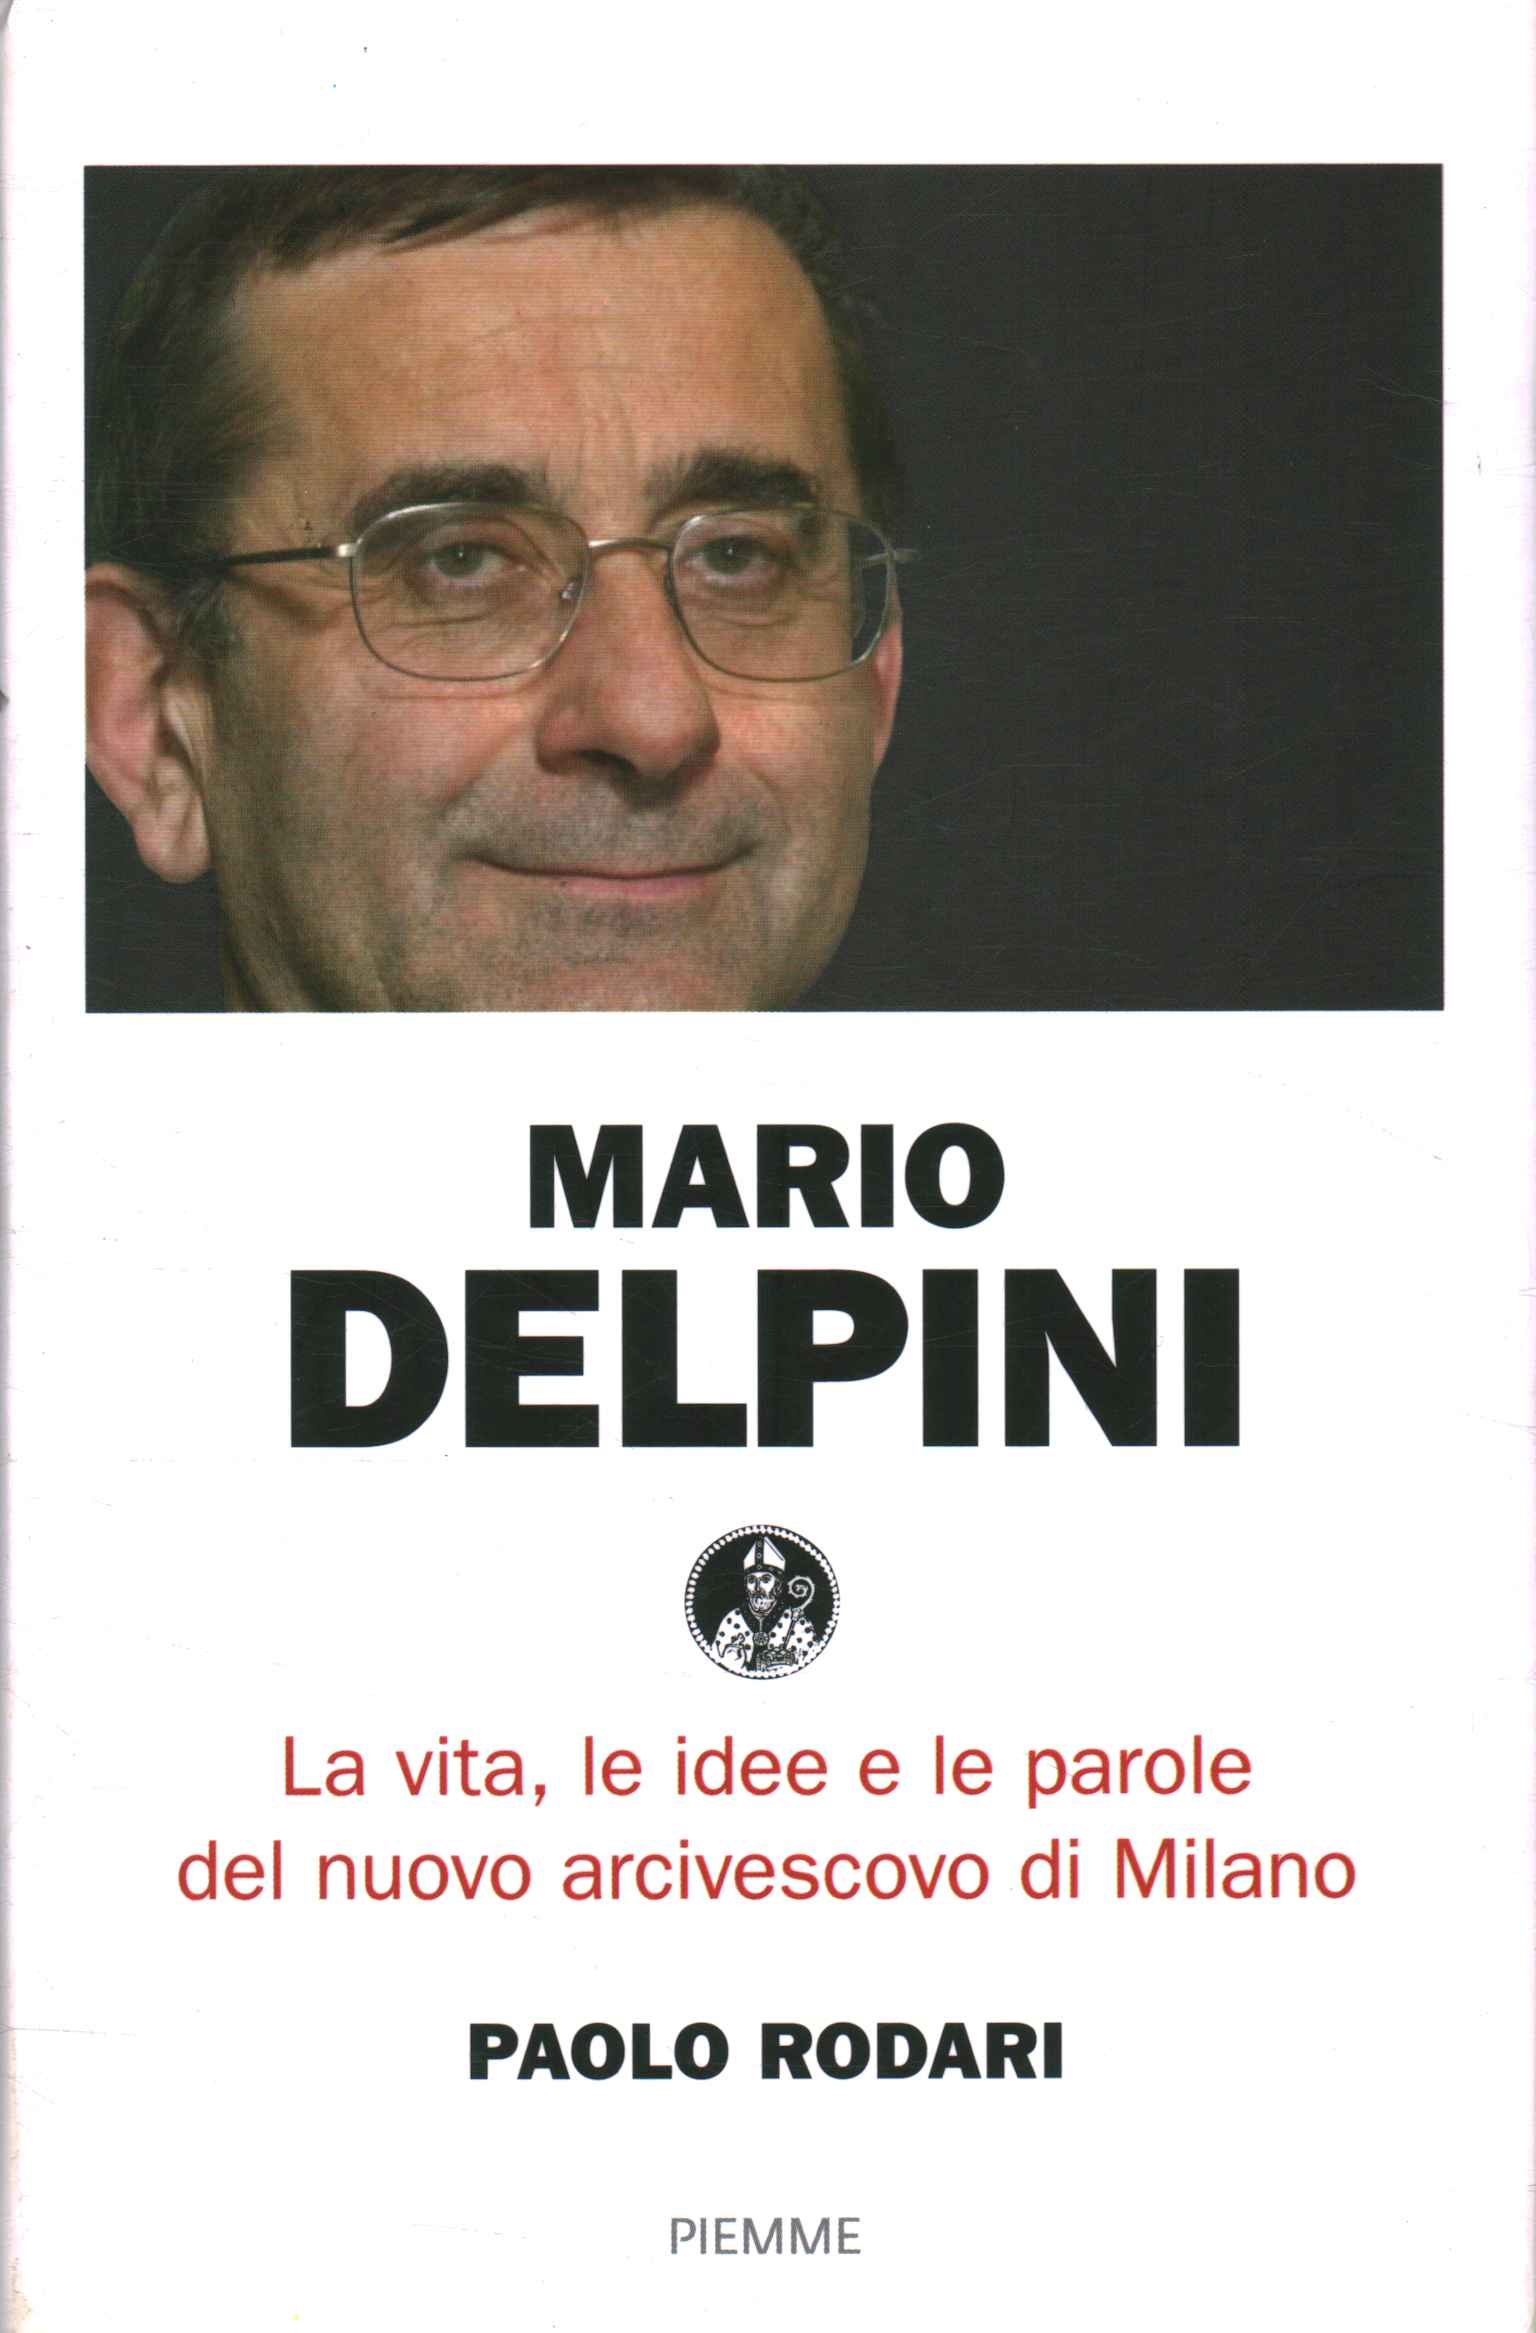 Mario Delpini